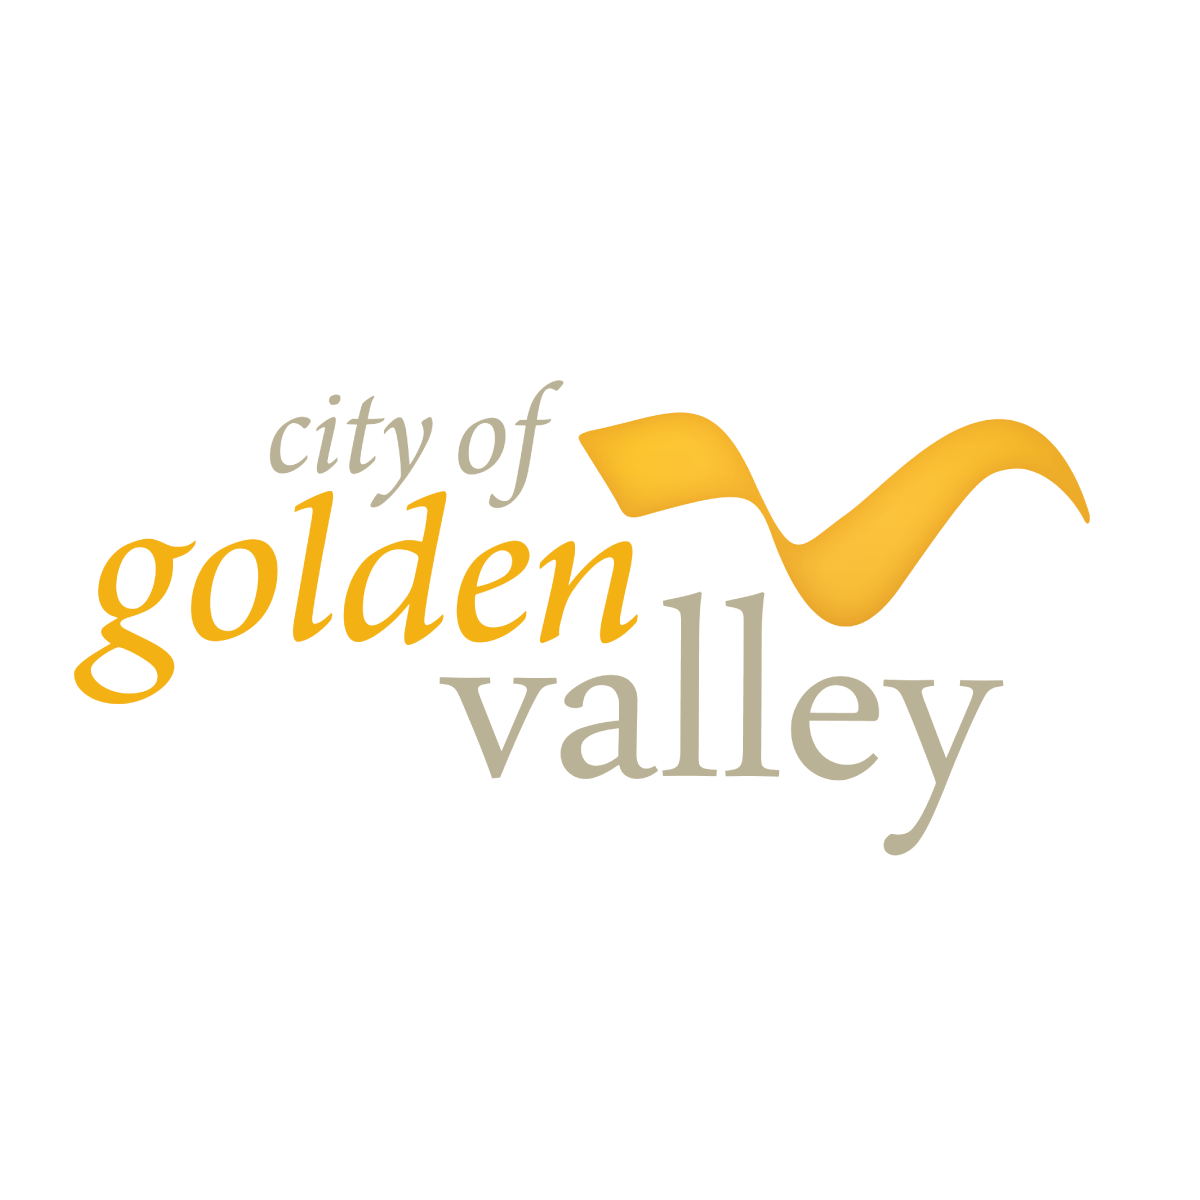 Ciudad de Golden Valley 
goldenvalleymn.gov